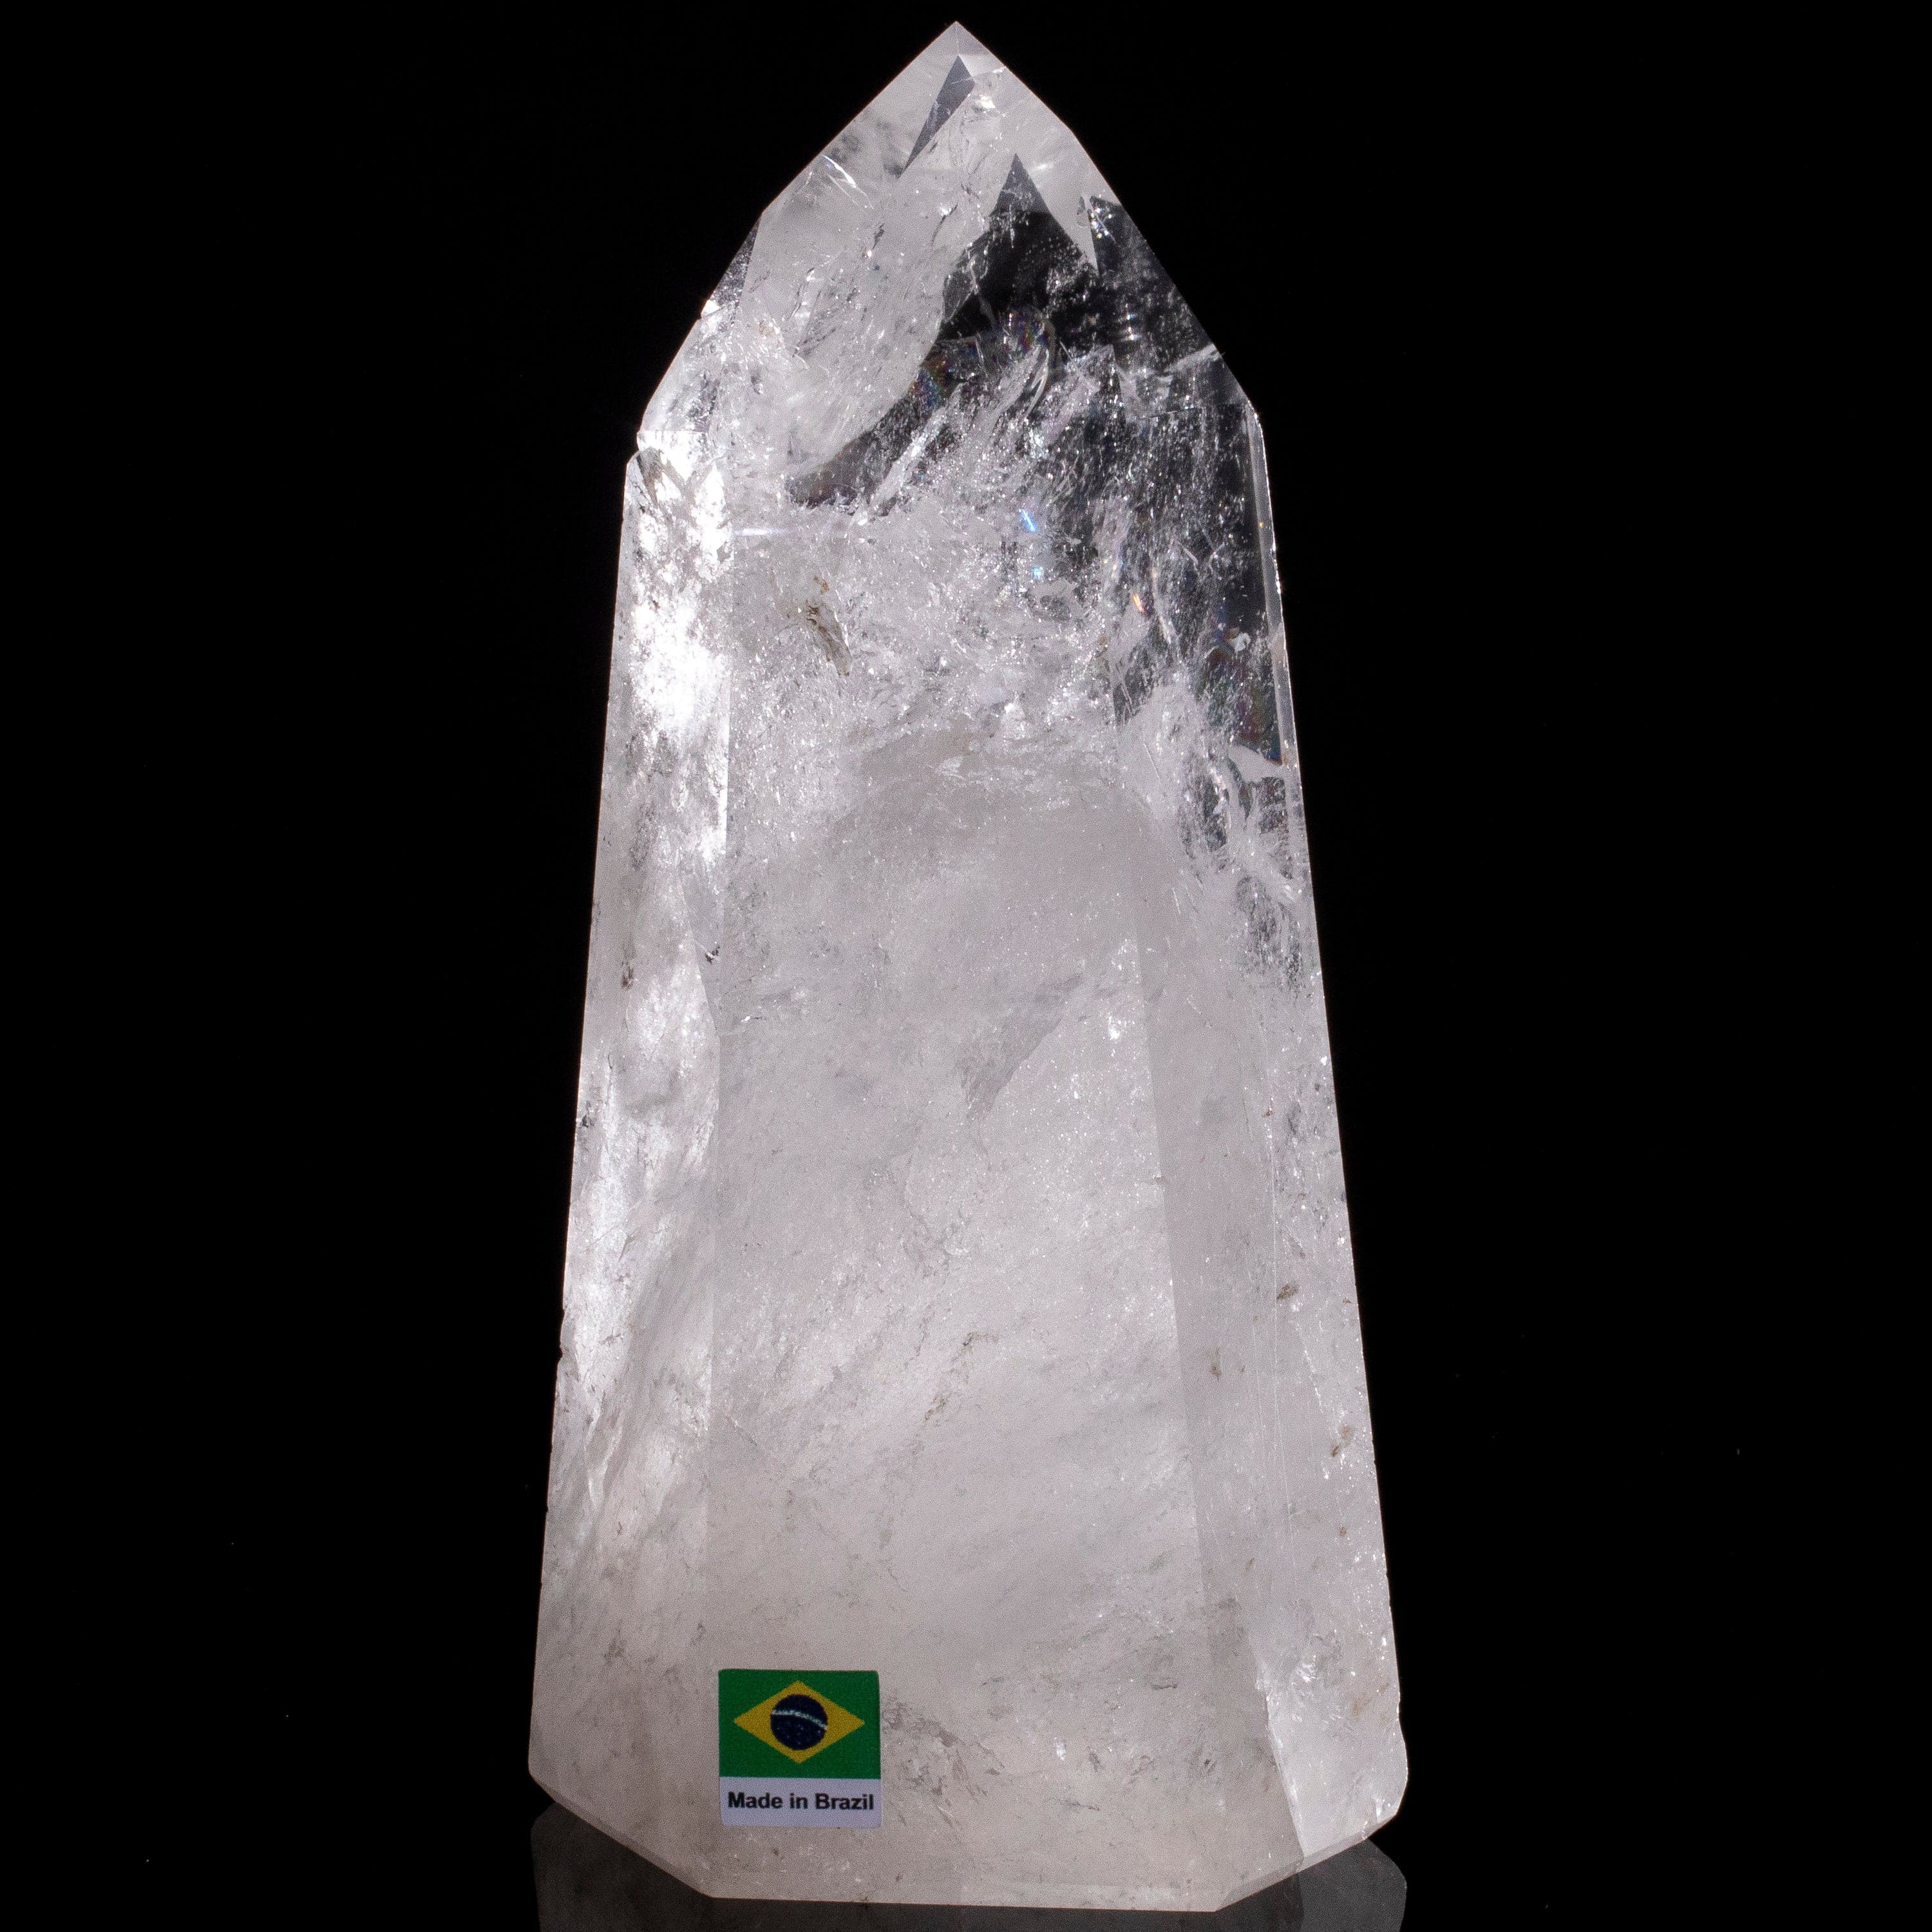 Kalifano Quartz Natural Quartz Obelisk from Brazil - 7" / 1,034 grams QZ1500.019